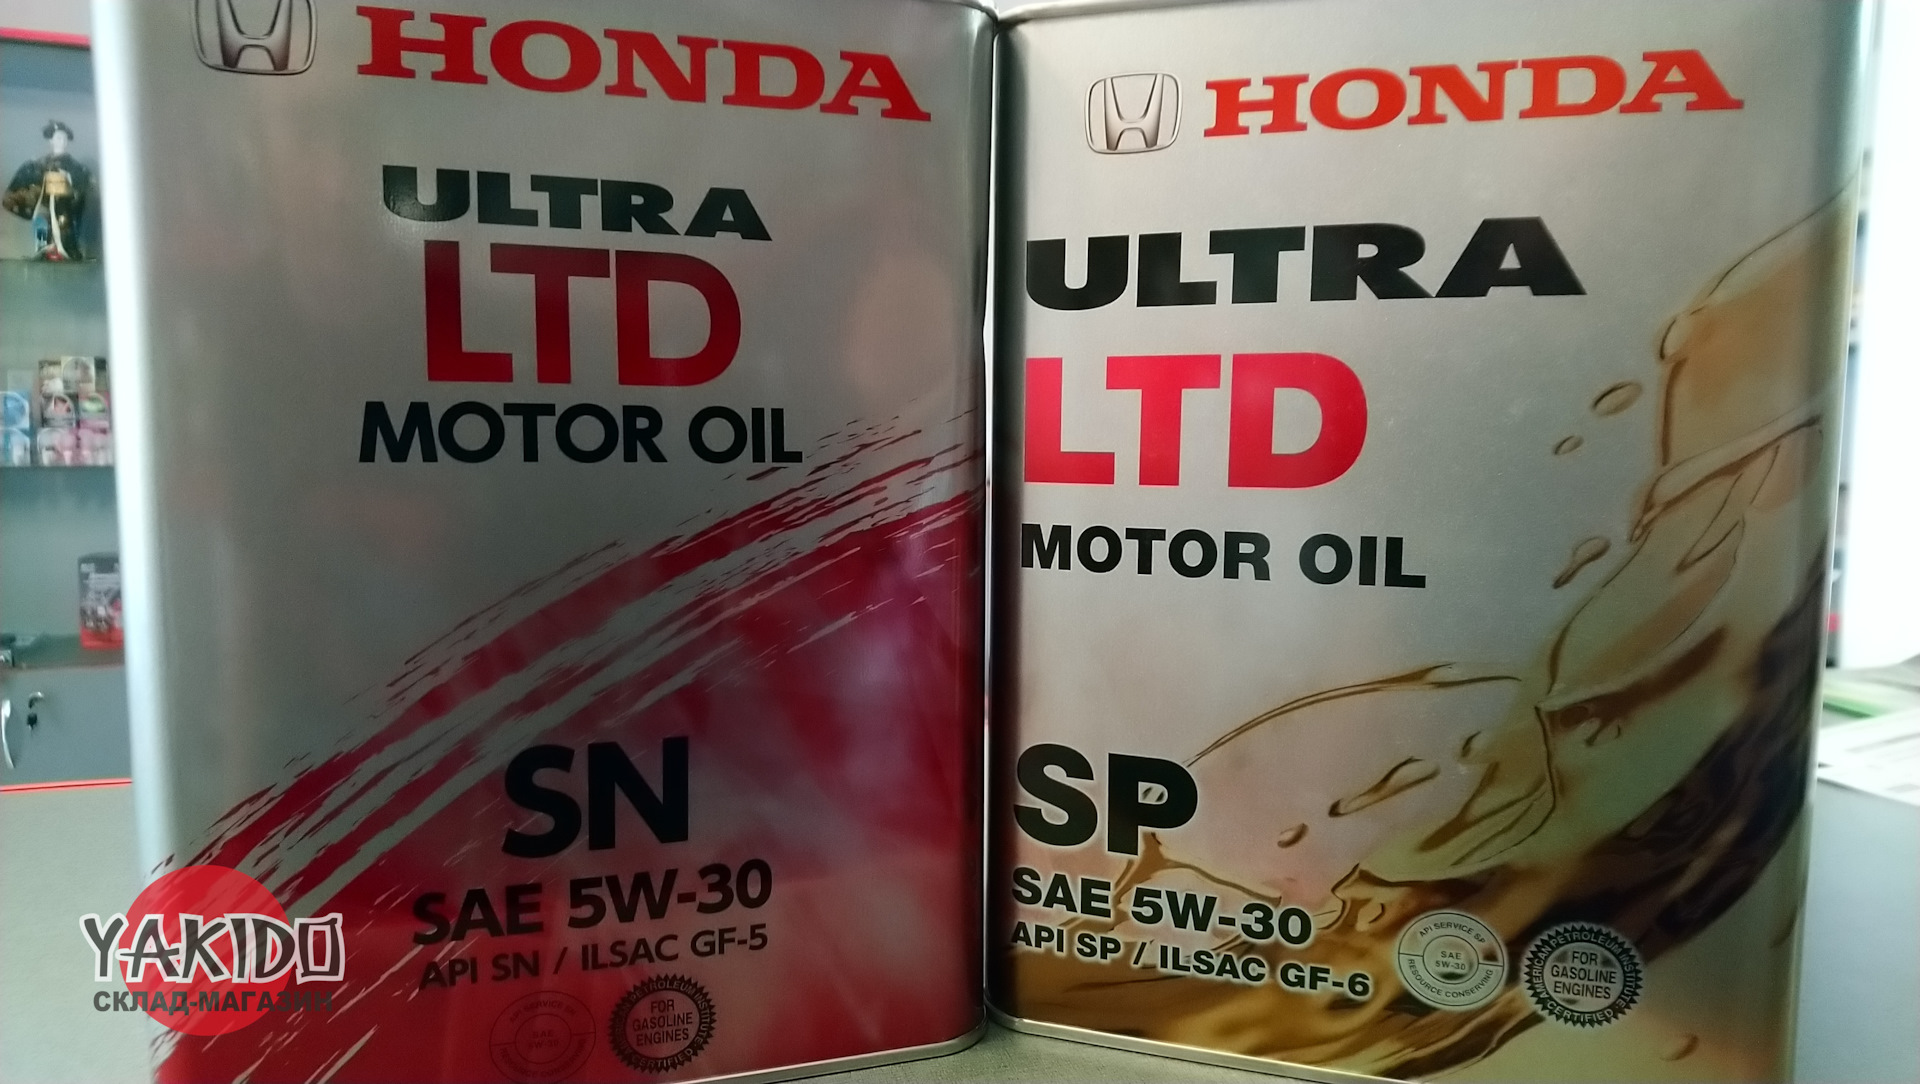 Купить масло sp 5w30. Масло Honda 5w30 SP. Honda Ultra Ltd 5w30 SP/gf-6a 4л. Honda Ultra Ltd SP/gf-6 5w30 4л жесть. Масло Honda 5w30 SP 1л.